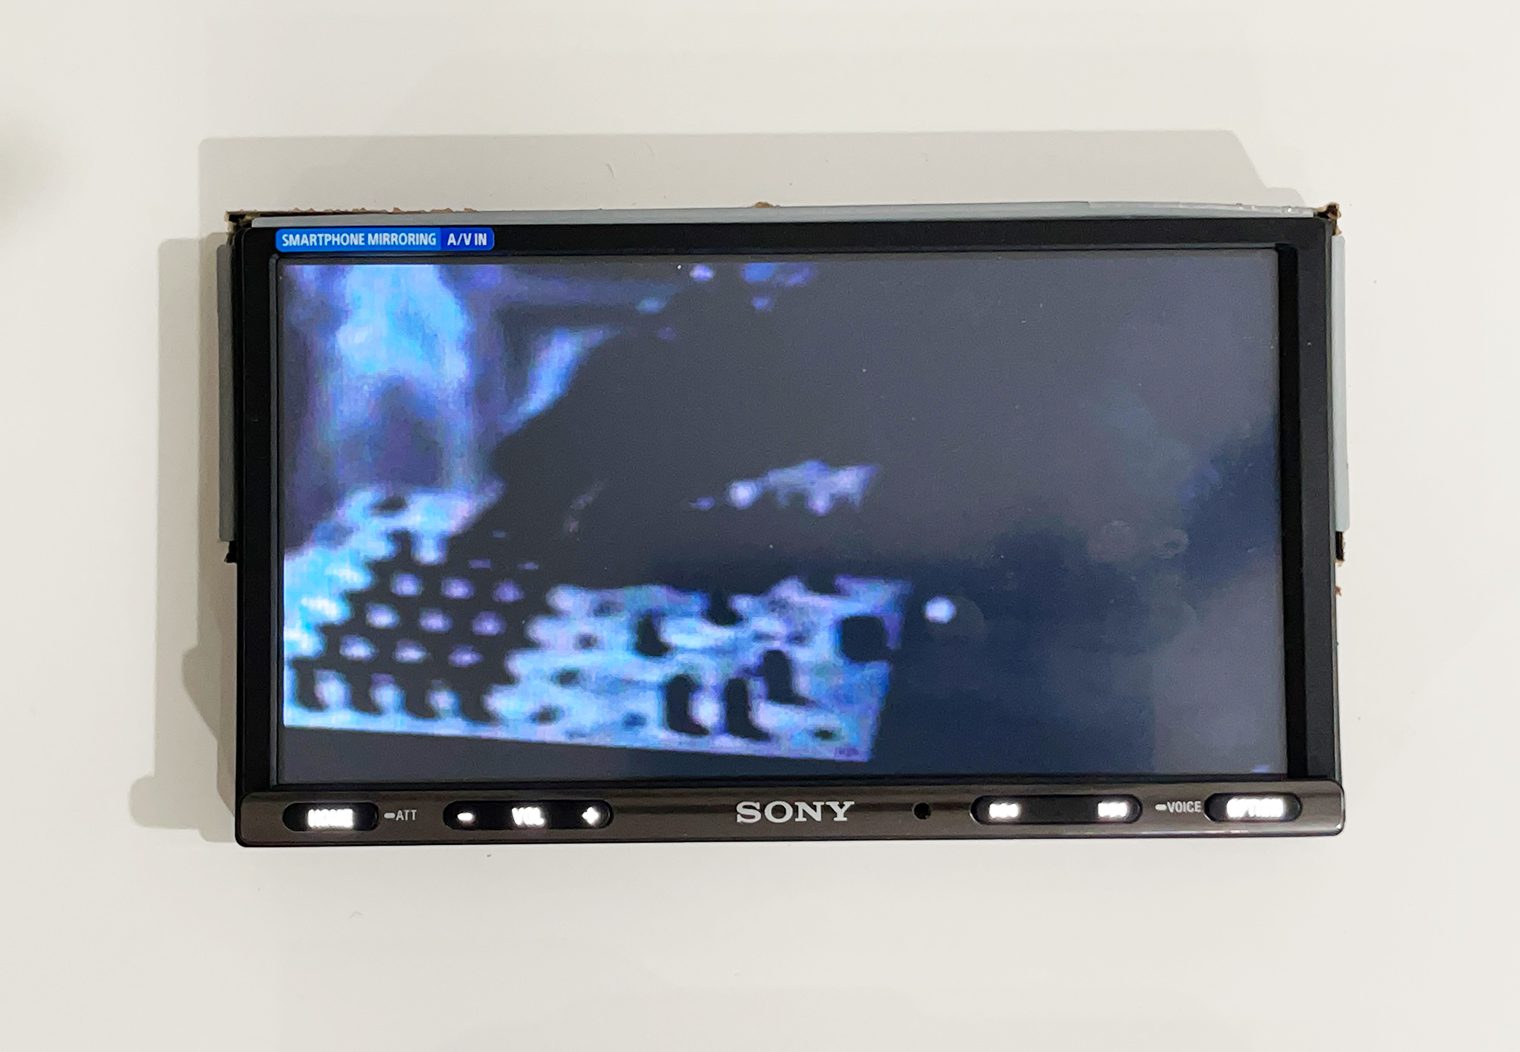 Sony XAV-AX3200 USB video